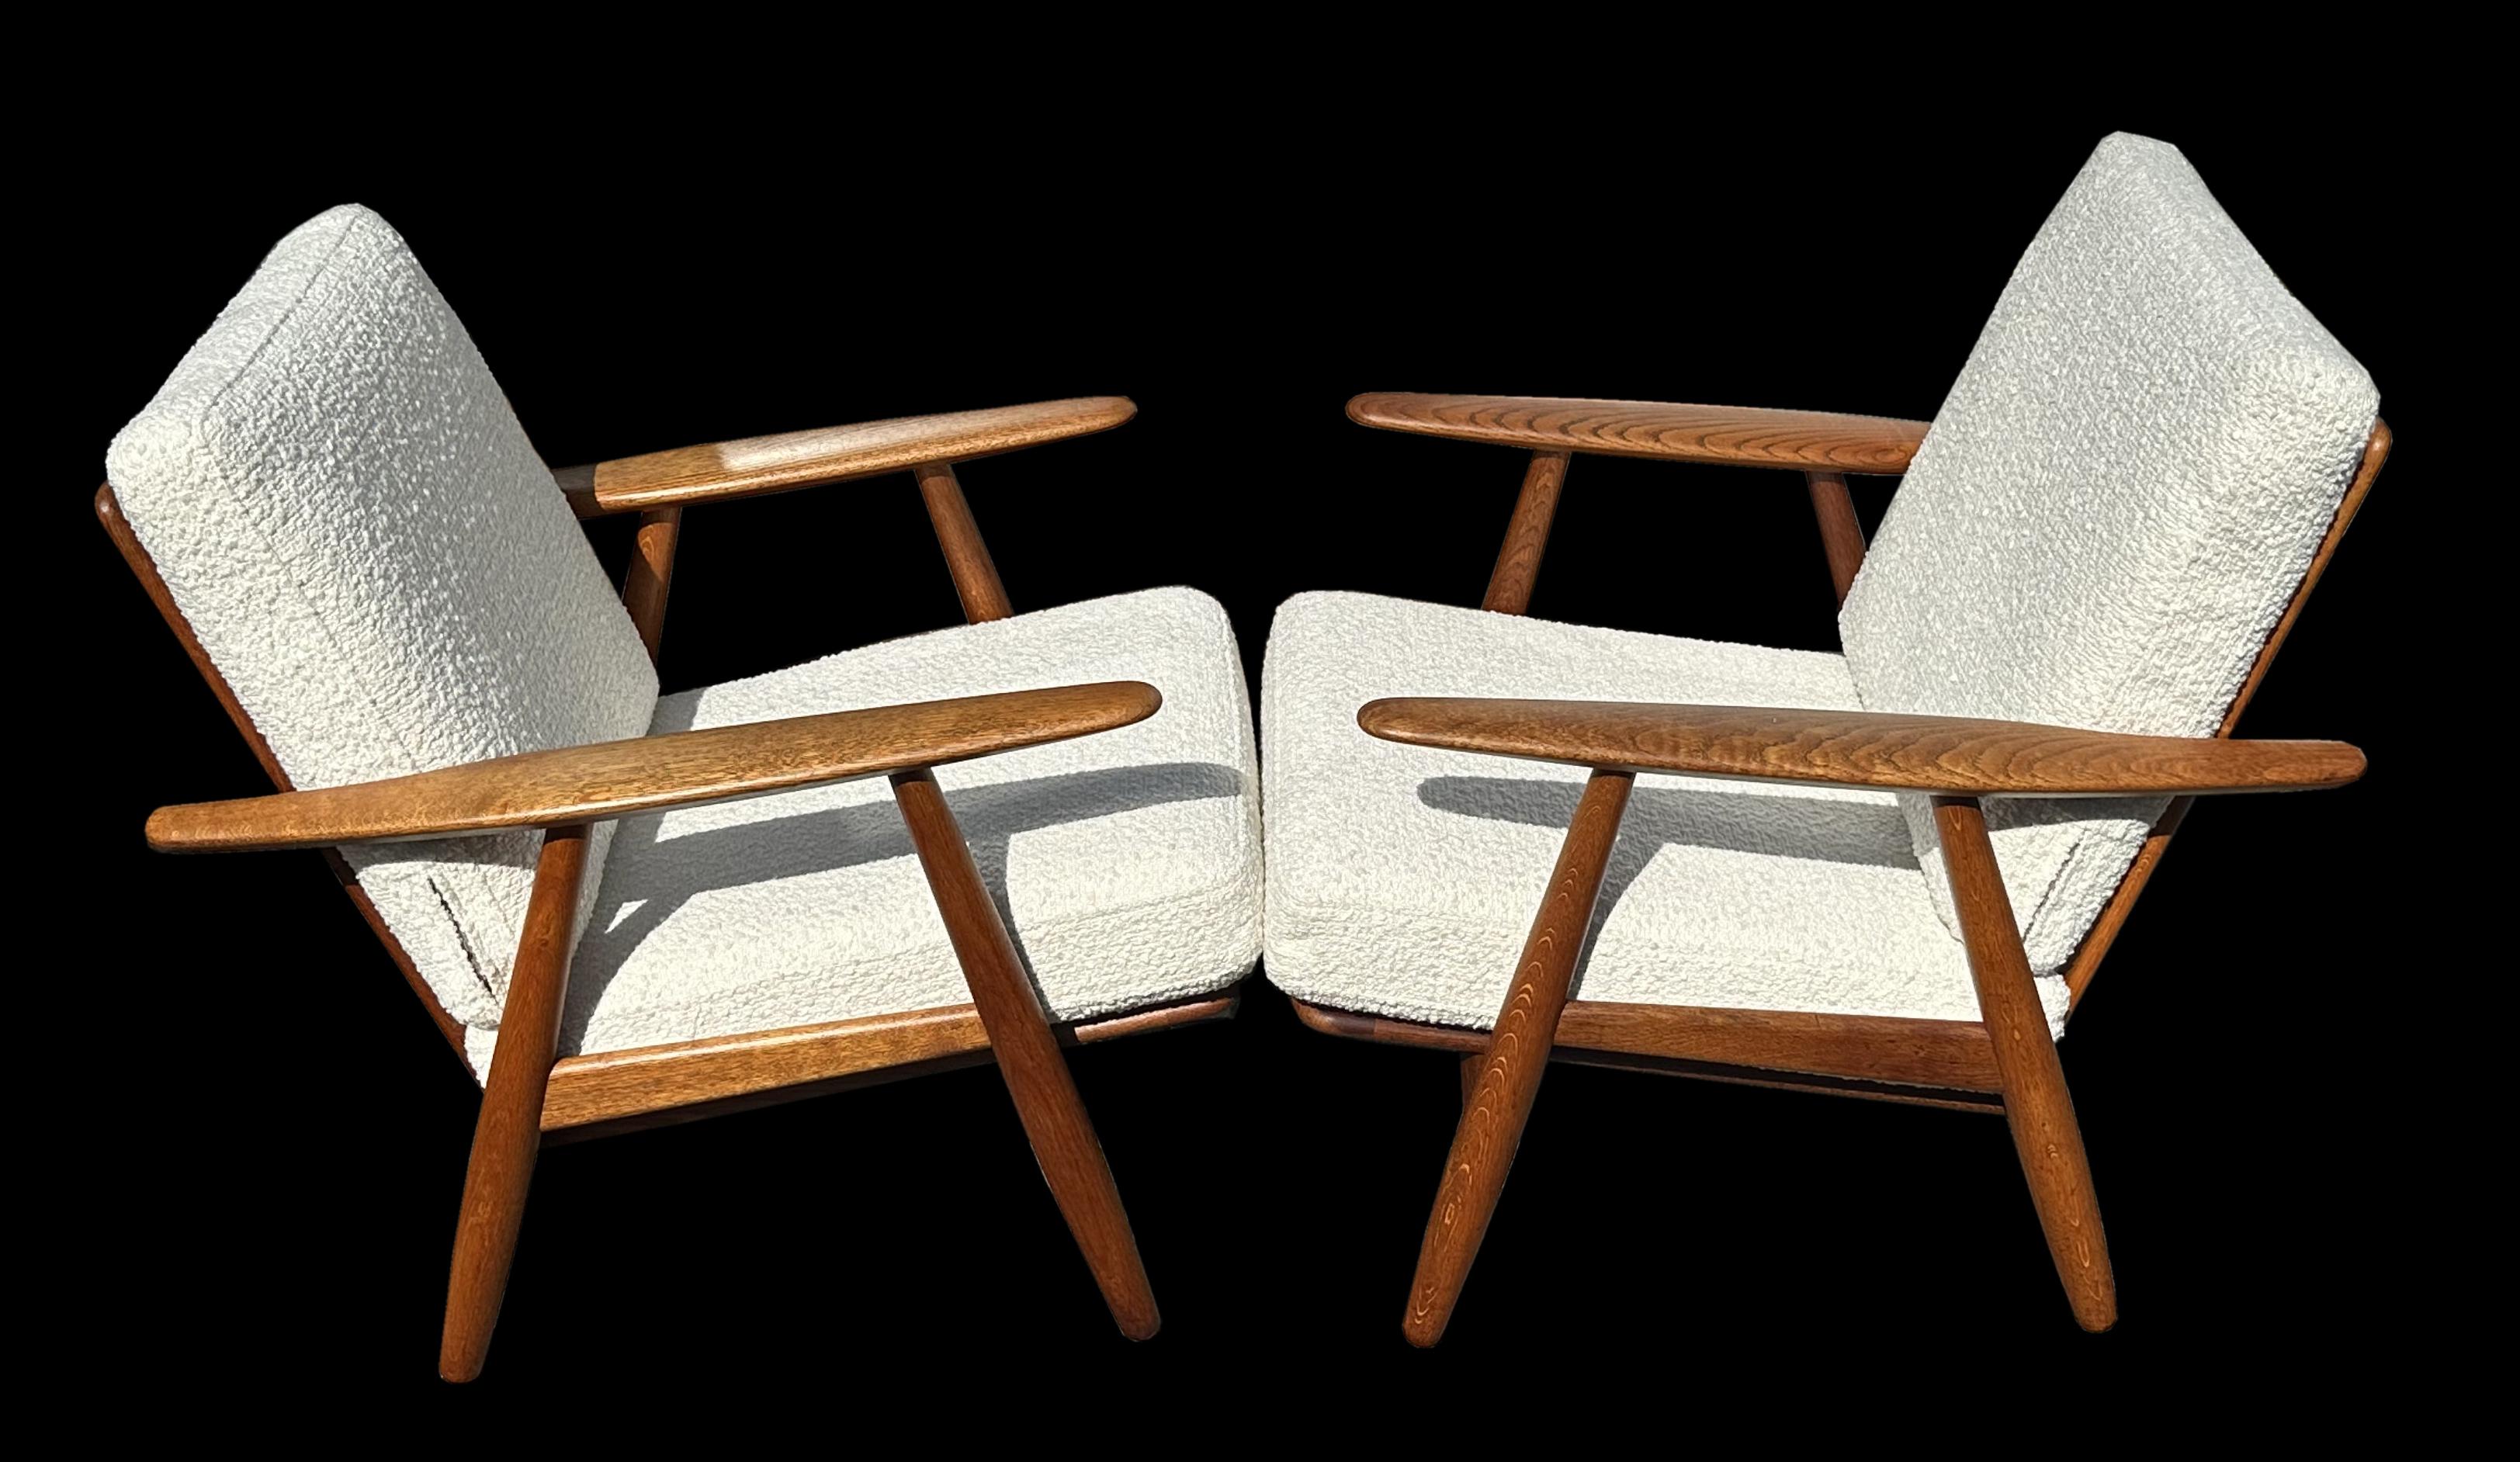 Schönes originales Paar dieser superbequemen klassischen Stühle aus den 1950er Jahren von Meisterdesigner Hans J. Wegner für Getama.
Die Gestelle aus Eiche und die Bezüge aus frischem Boucle-Stoff sind bereit für Ihr Mid-Century-Wohnzimmer oder Ihr